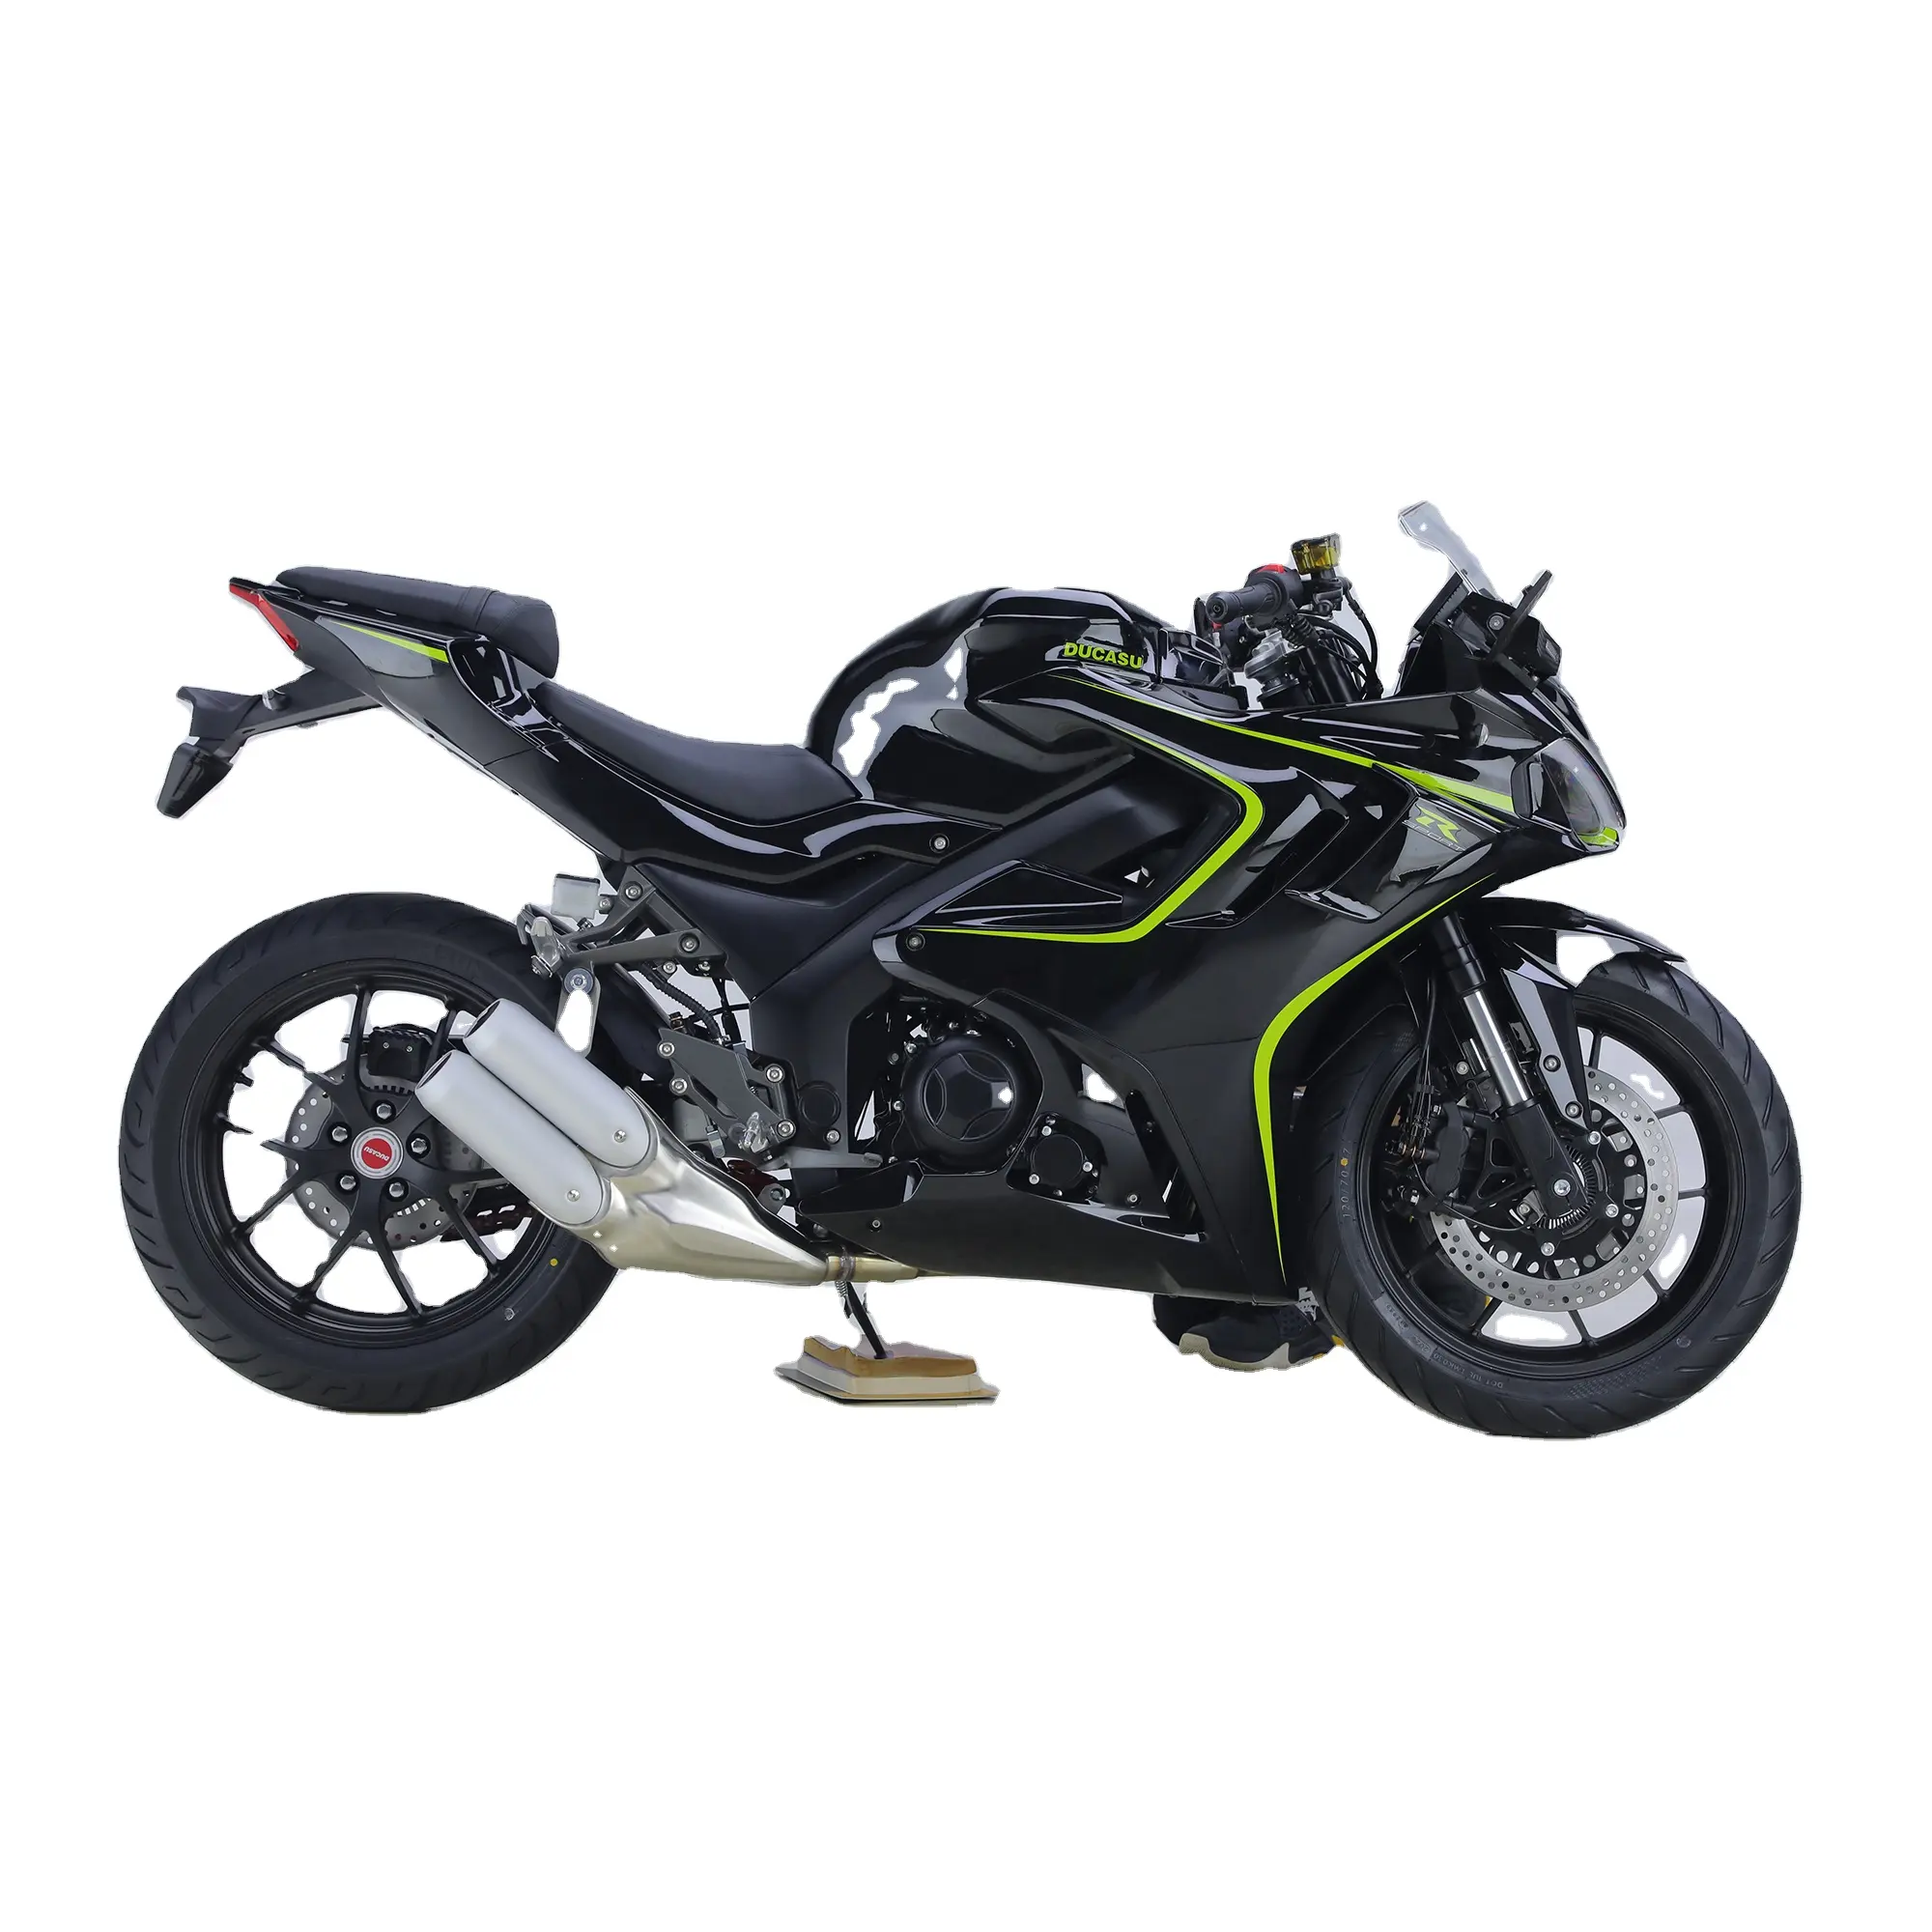 محرك الدراجة النارية WX-DK400 يعمل بالوقود 400 سي سي محرك دراجة سباق آلي دراجة دفع رباعي للطرق الرياضية بالبنزين